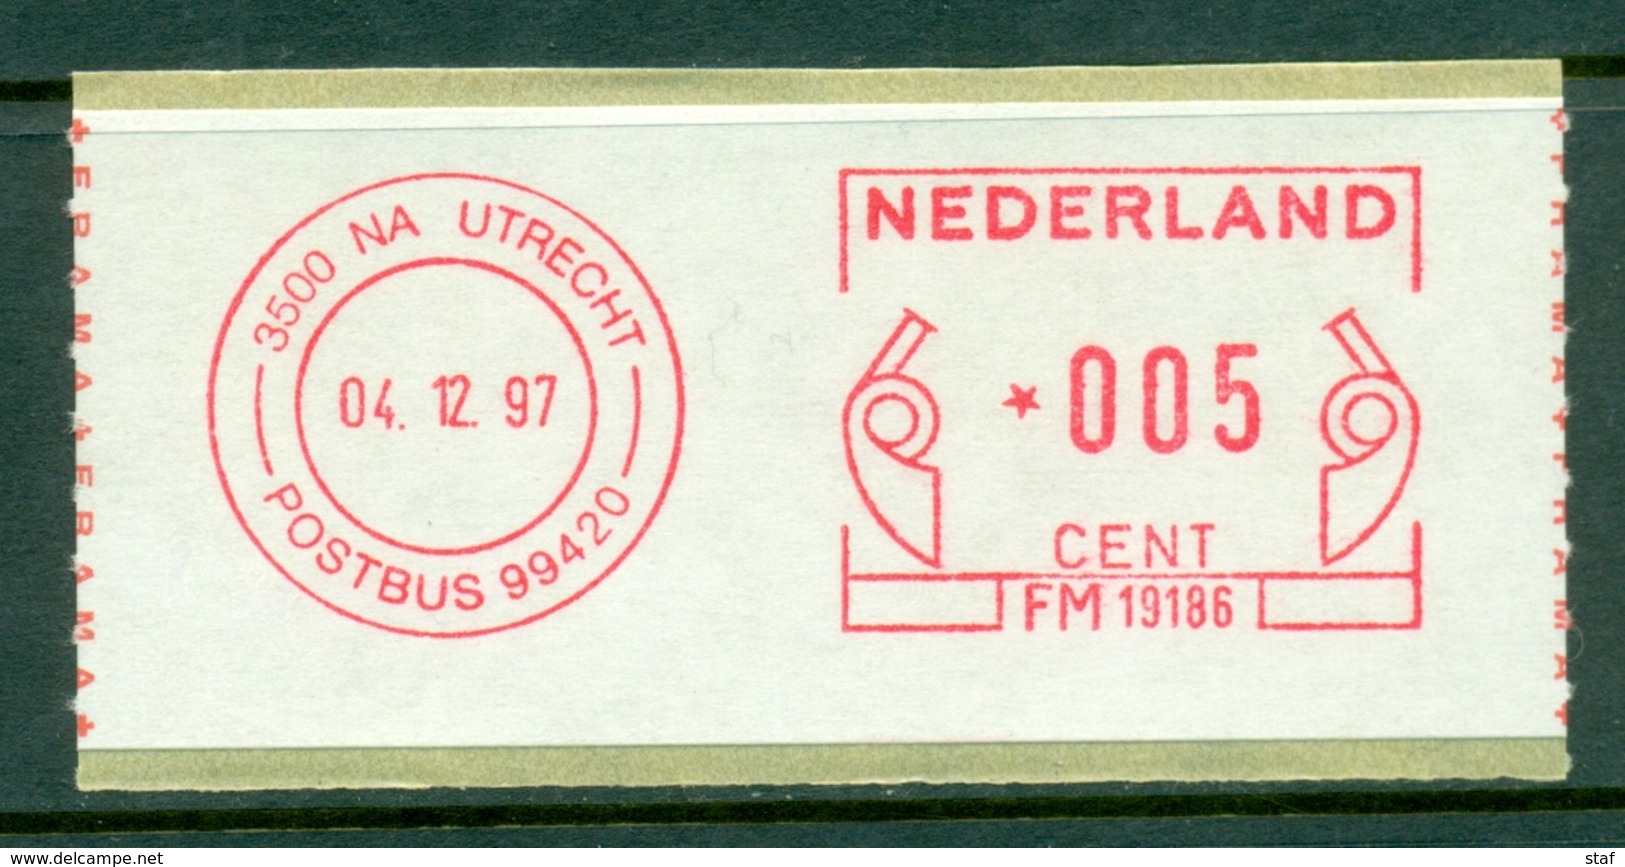 Frankeermachine Nederland Utrecht 04.12.97 ** - Franking Machines (EMA)